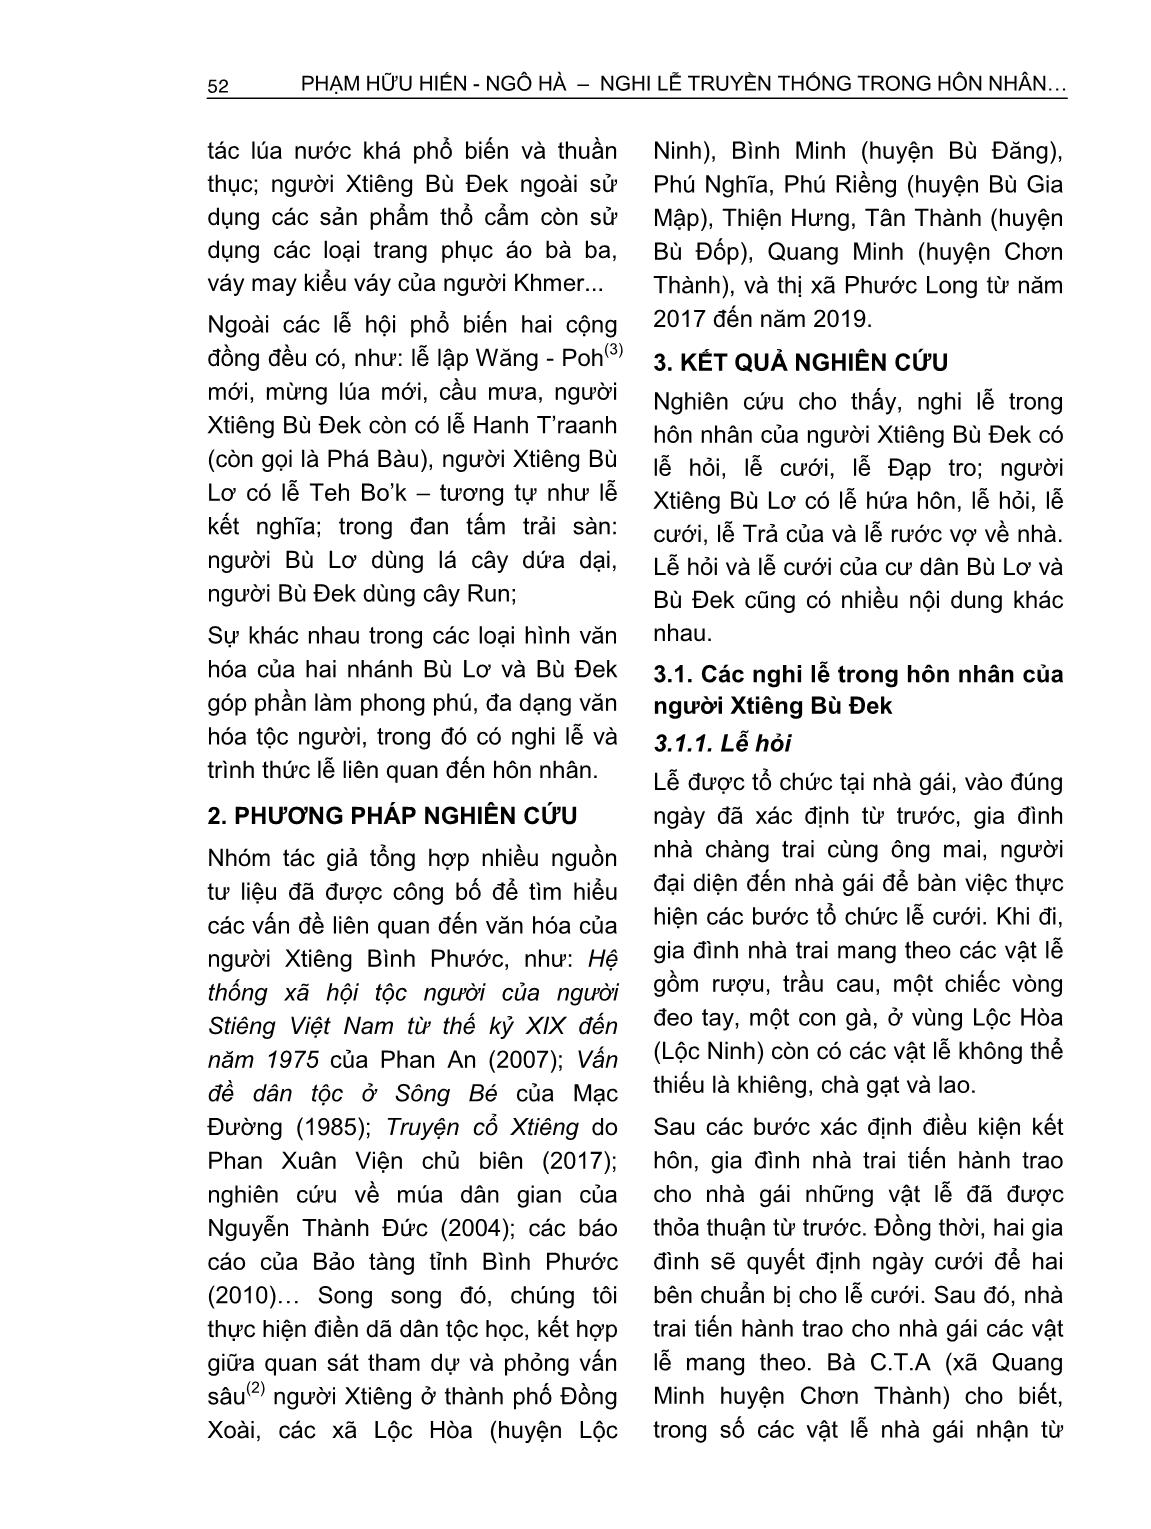 Nghi lễ truyền thống trong hôn nhân của người Xtiêng ở Bình Phước trang 2